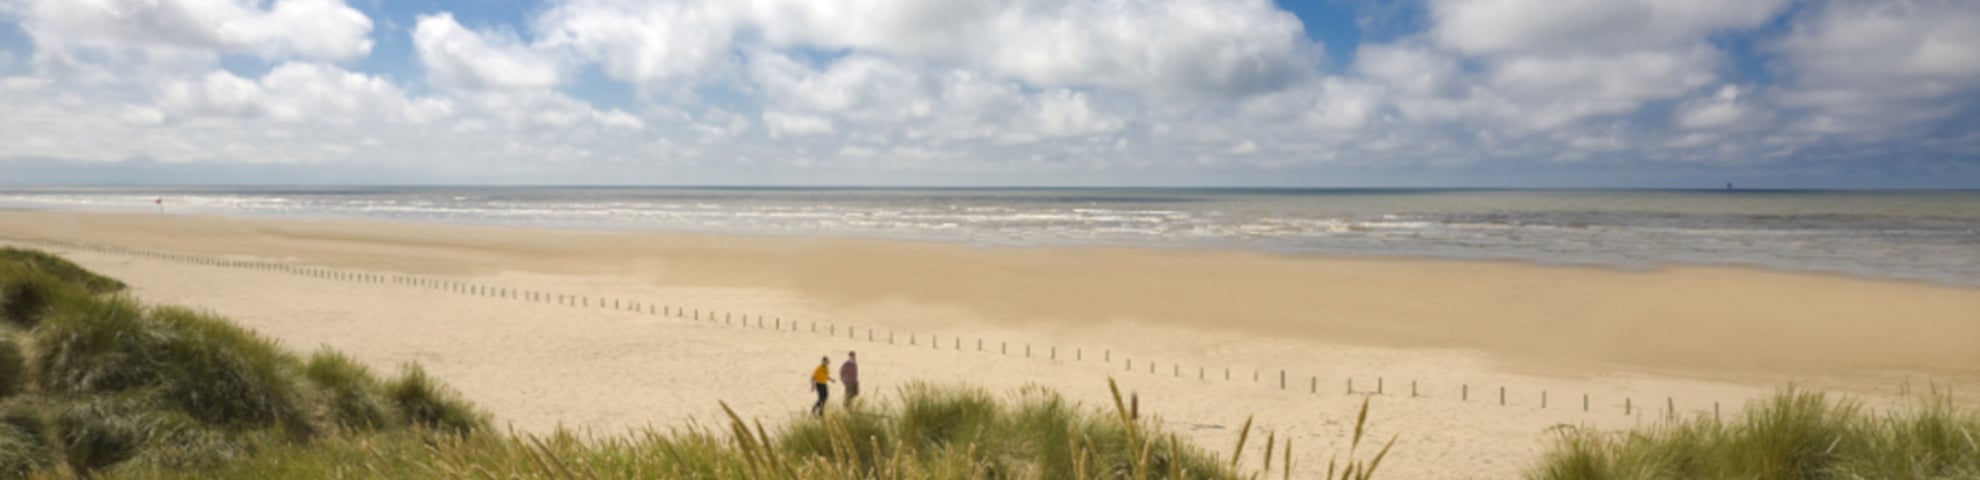 Sandy beach, with sandunes and a cloudy blue sky.